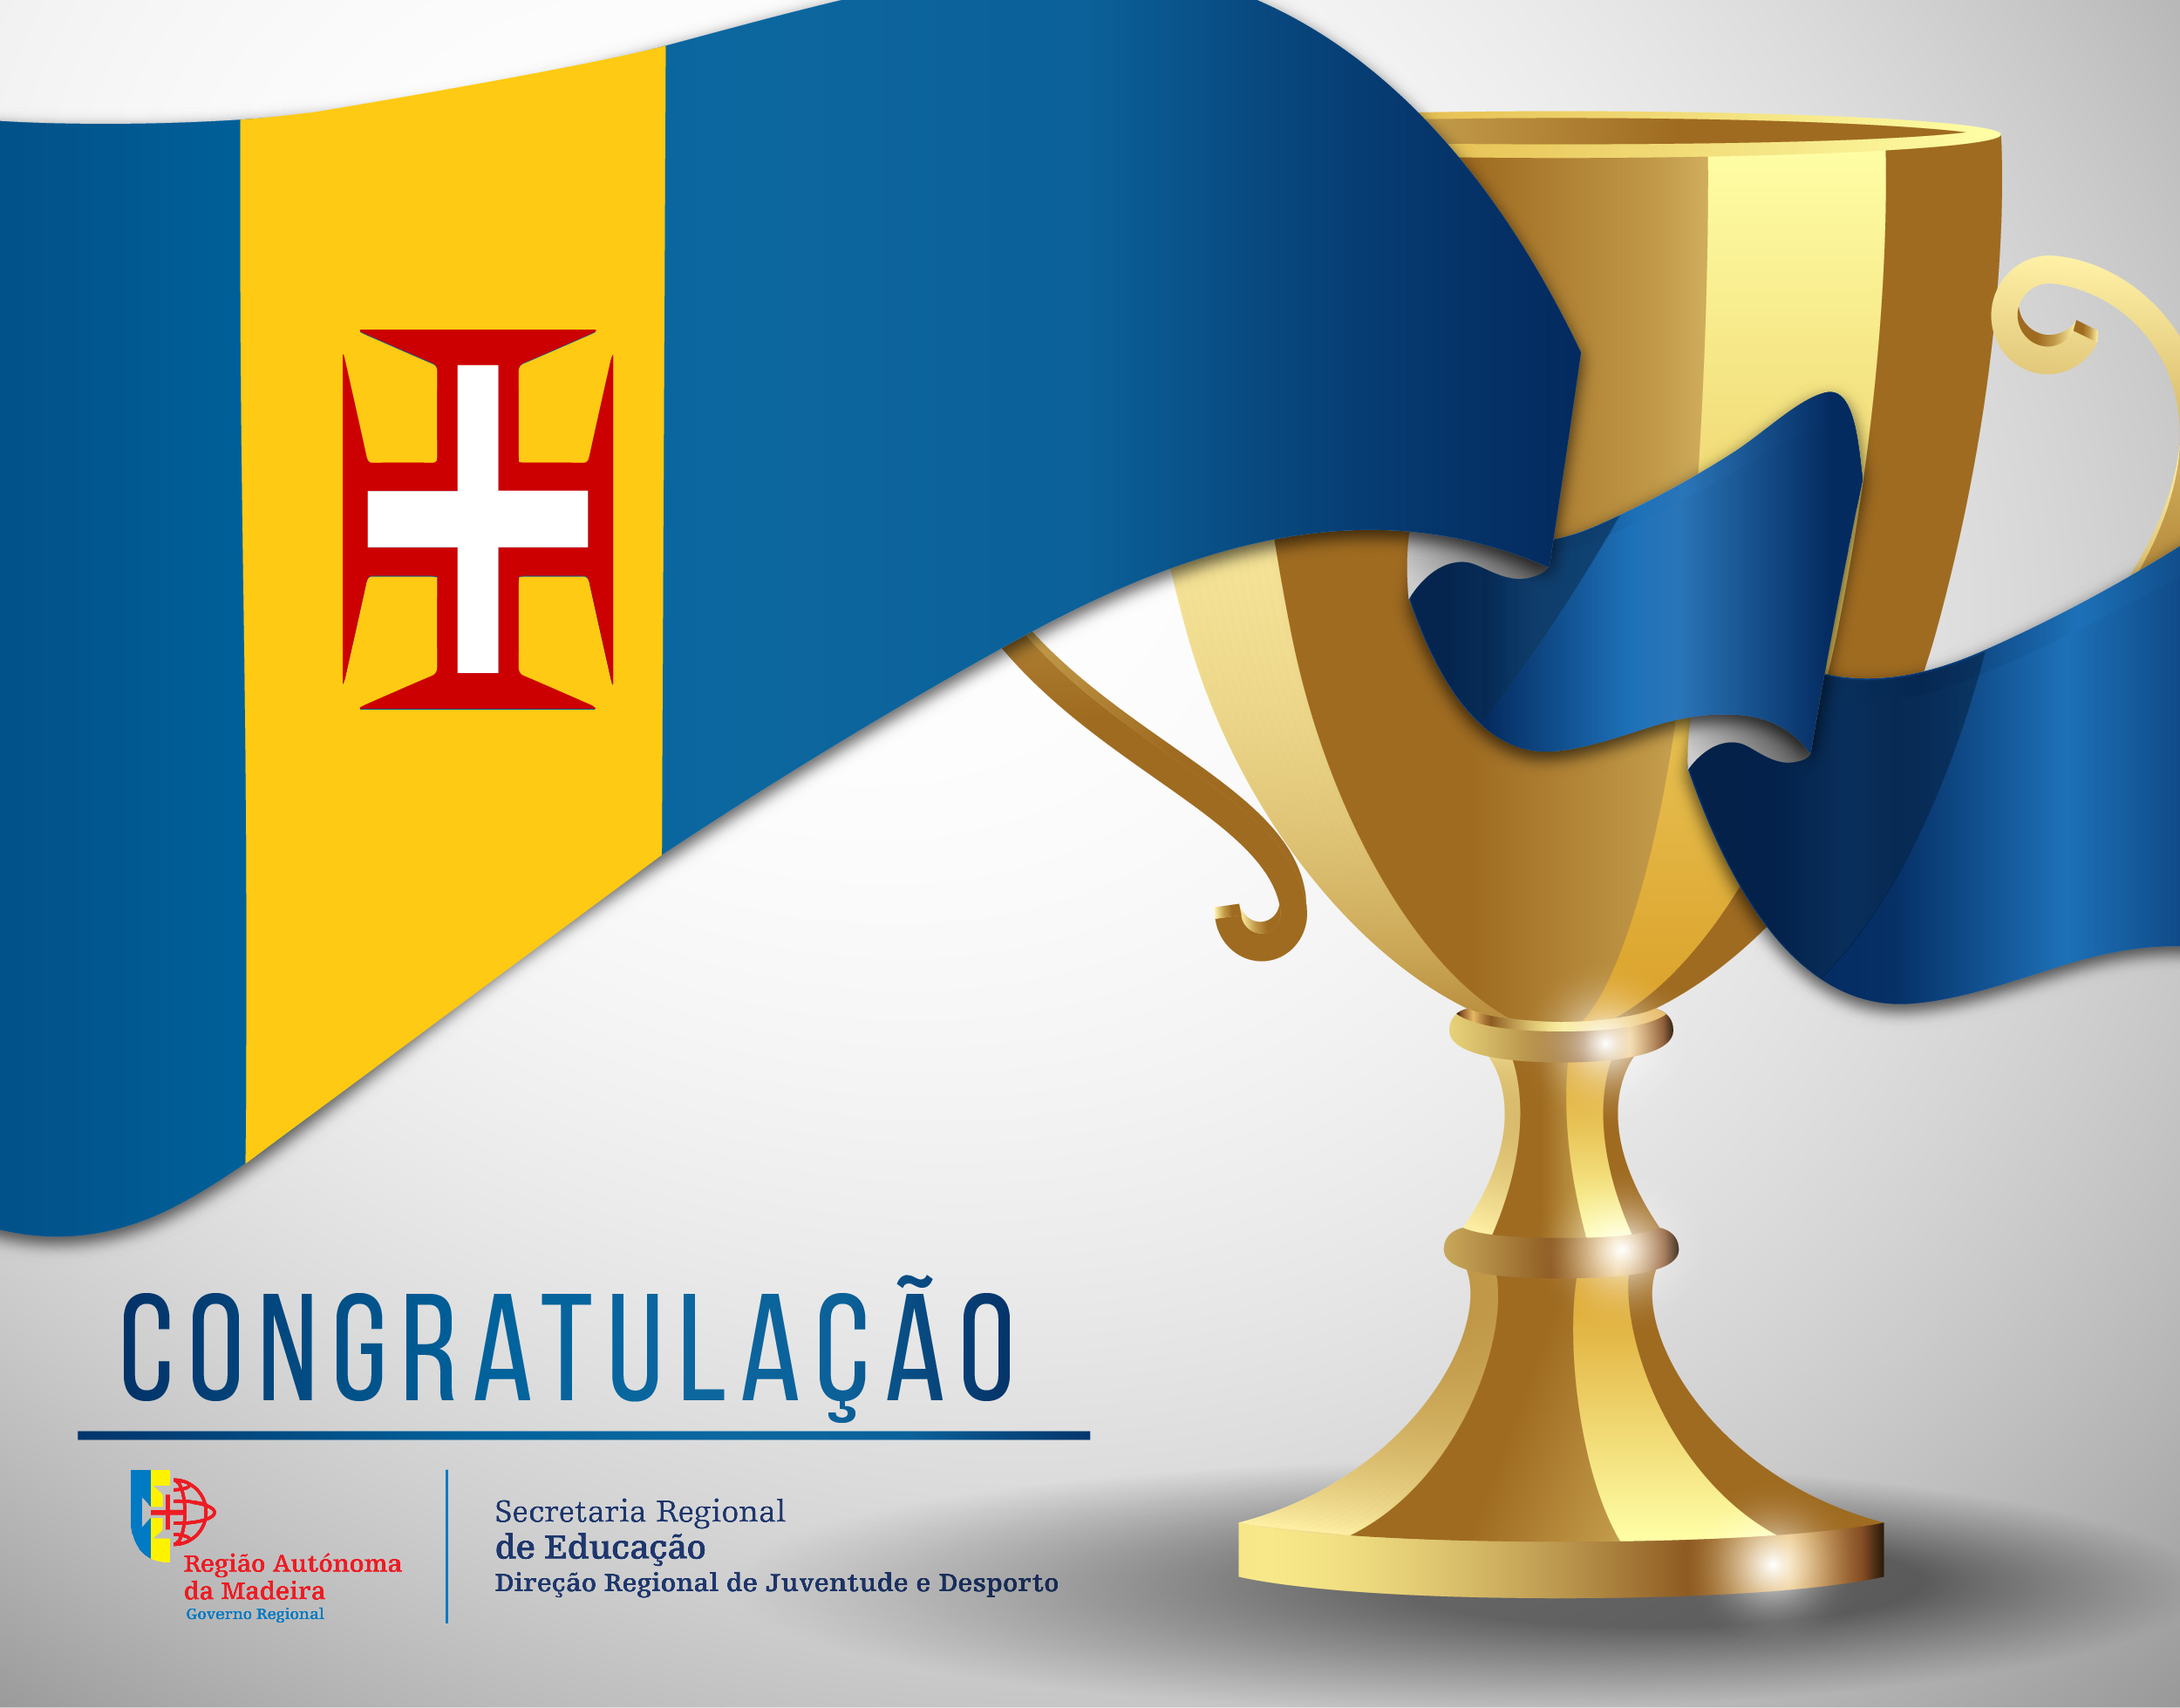 Congratulação - Tiago Almeida (CN Funchal)